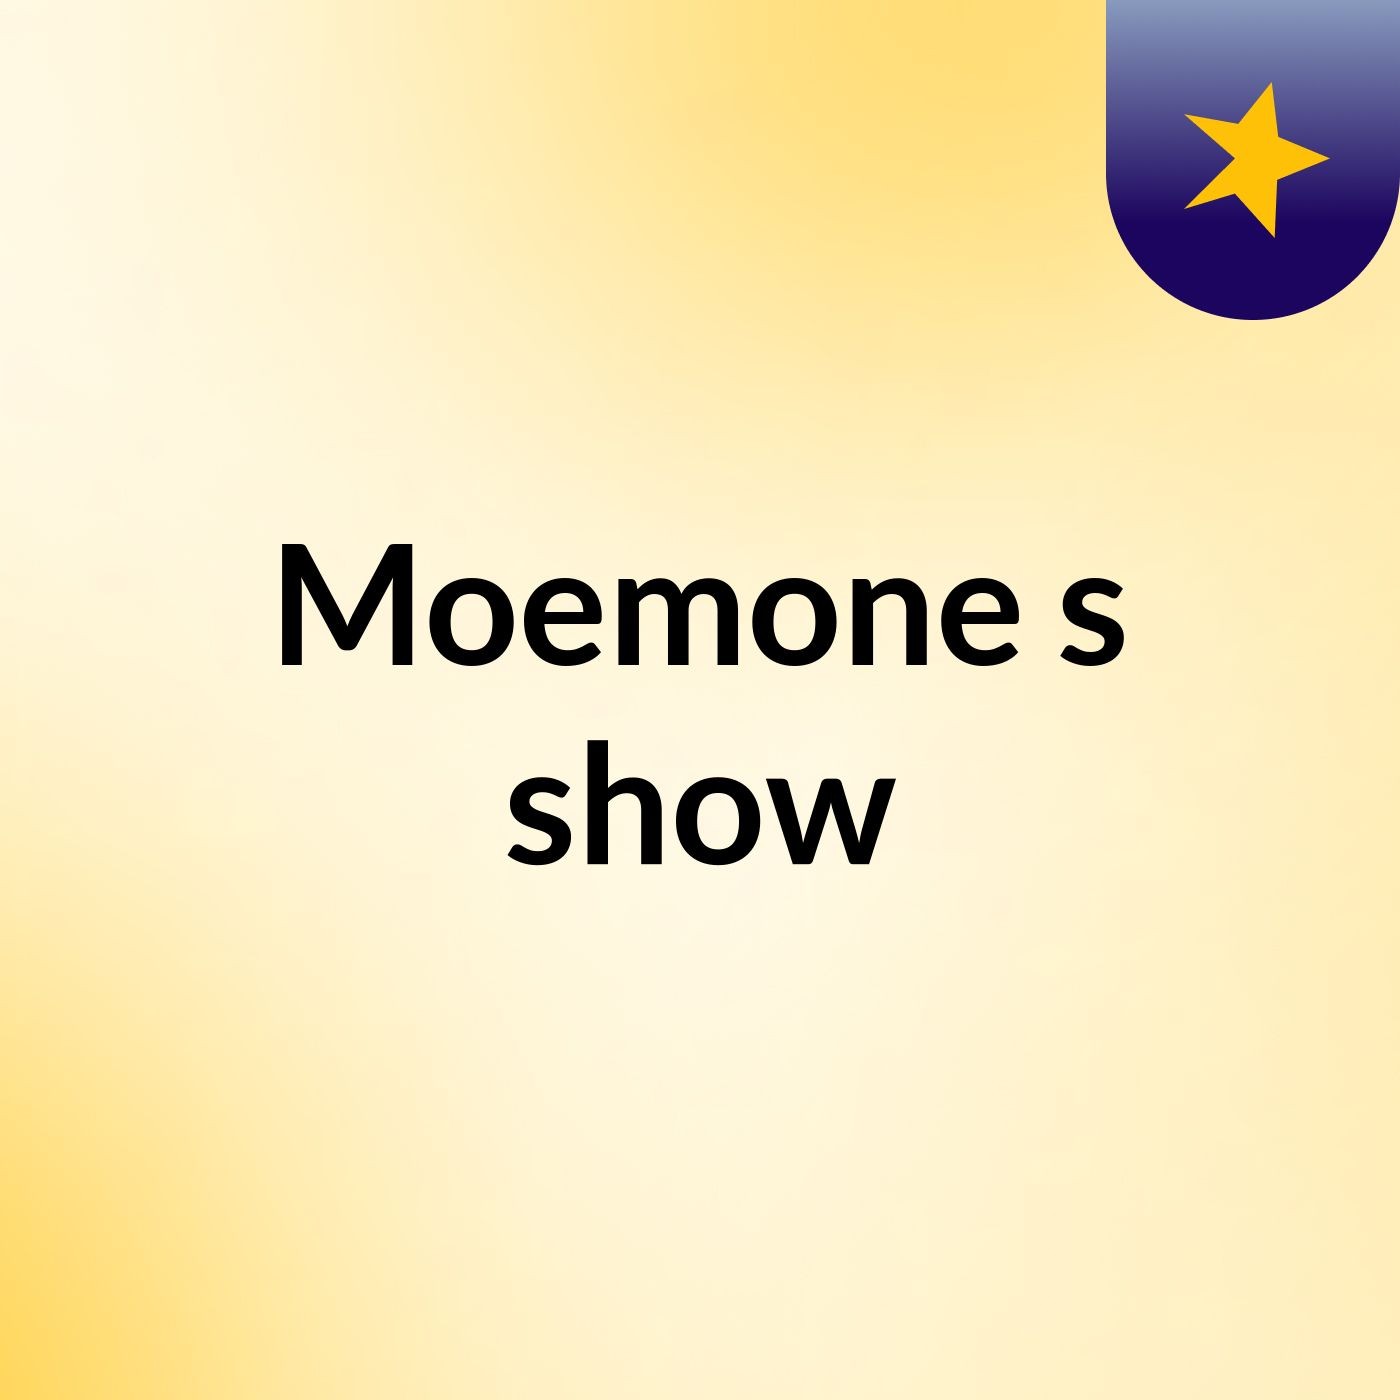 Moemone's show